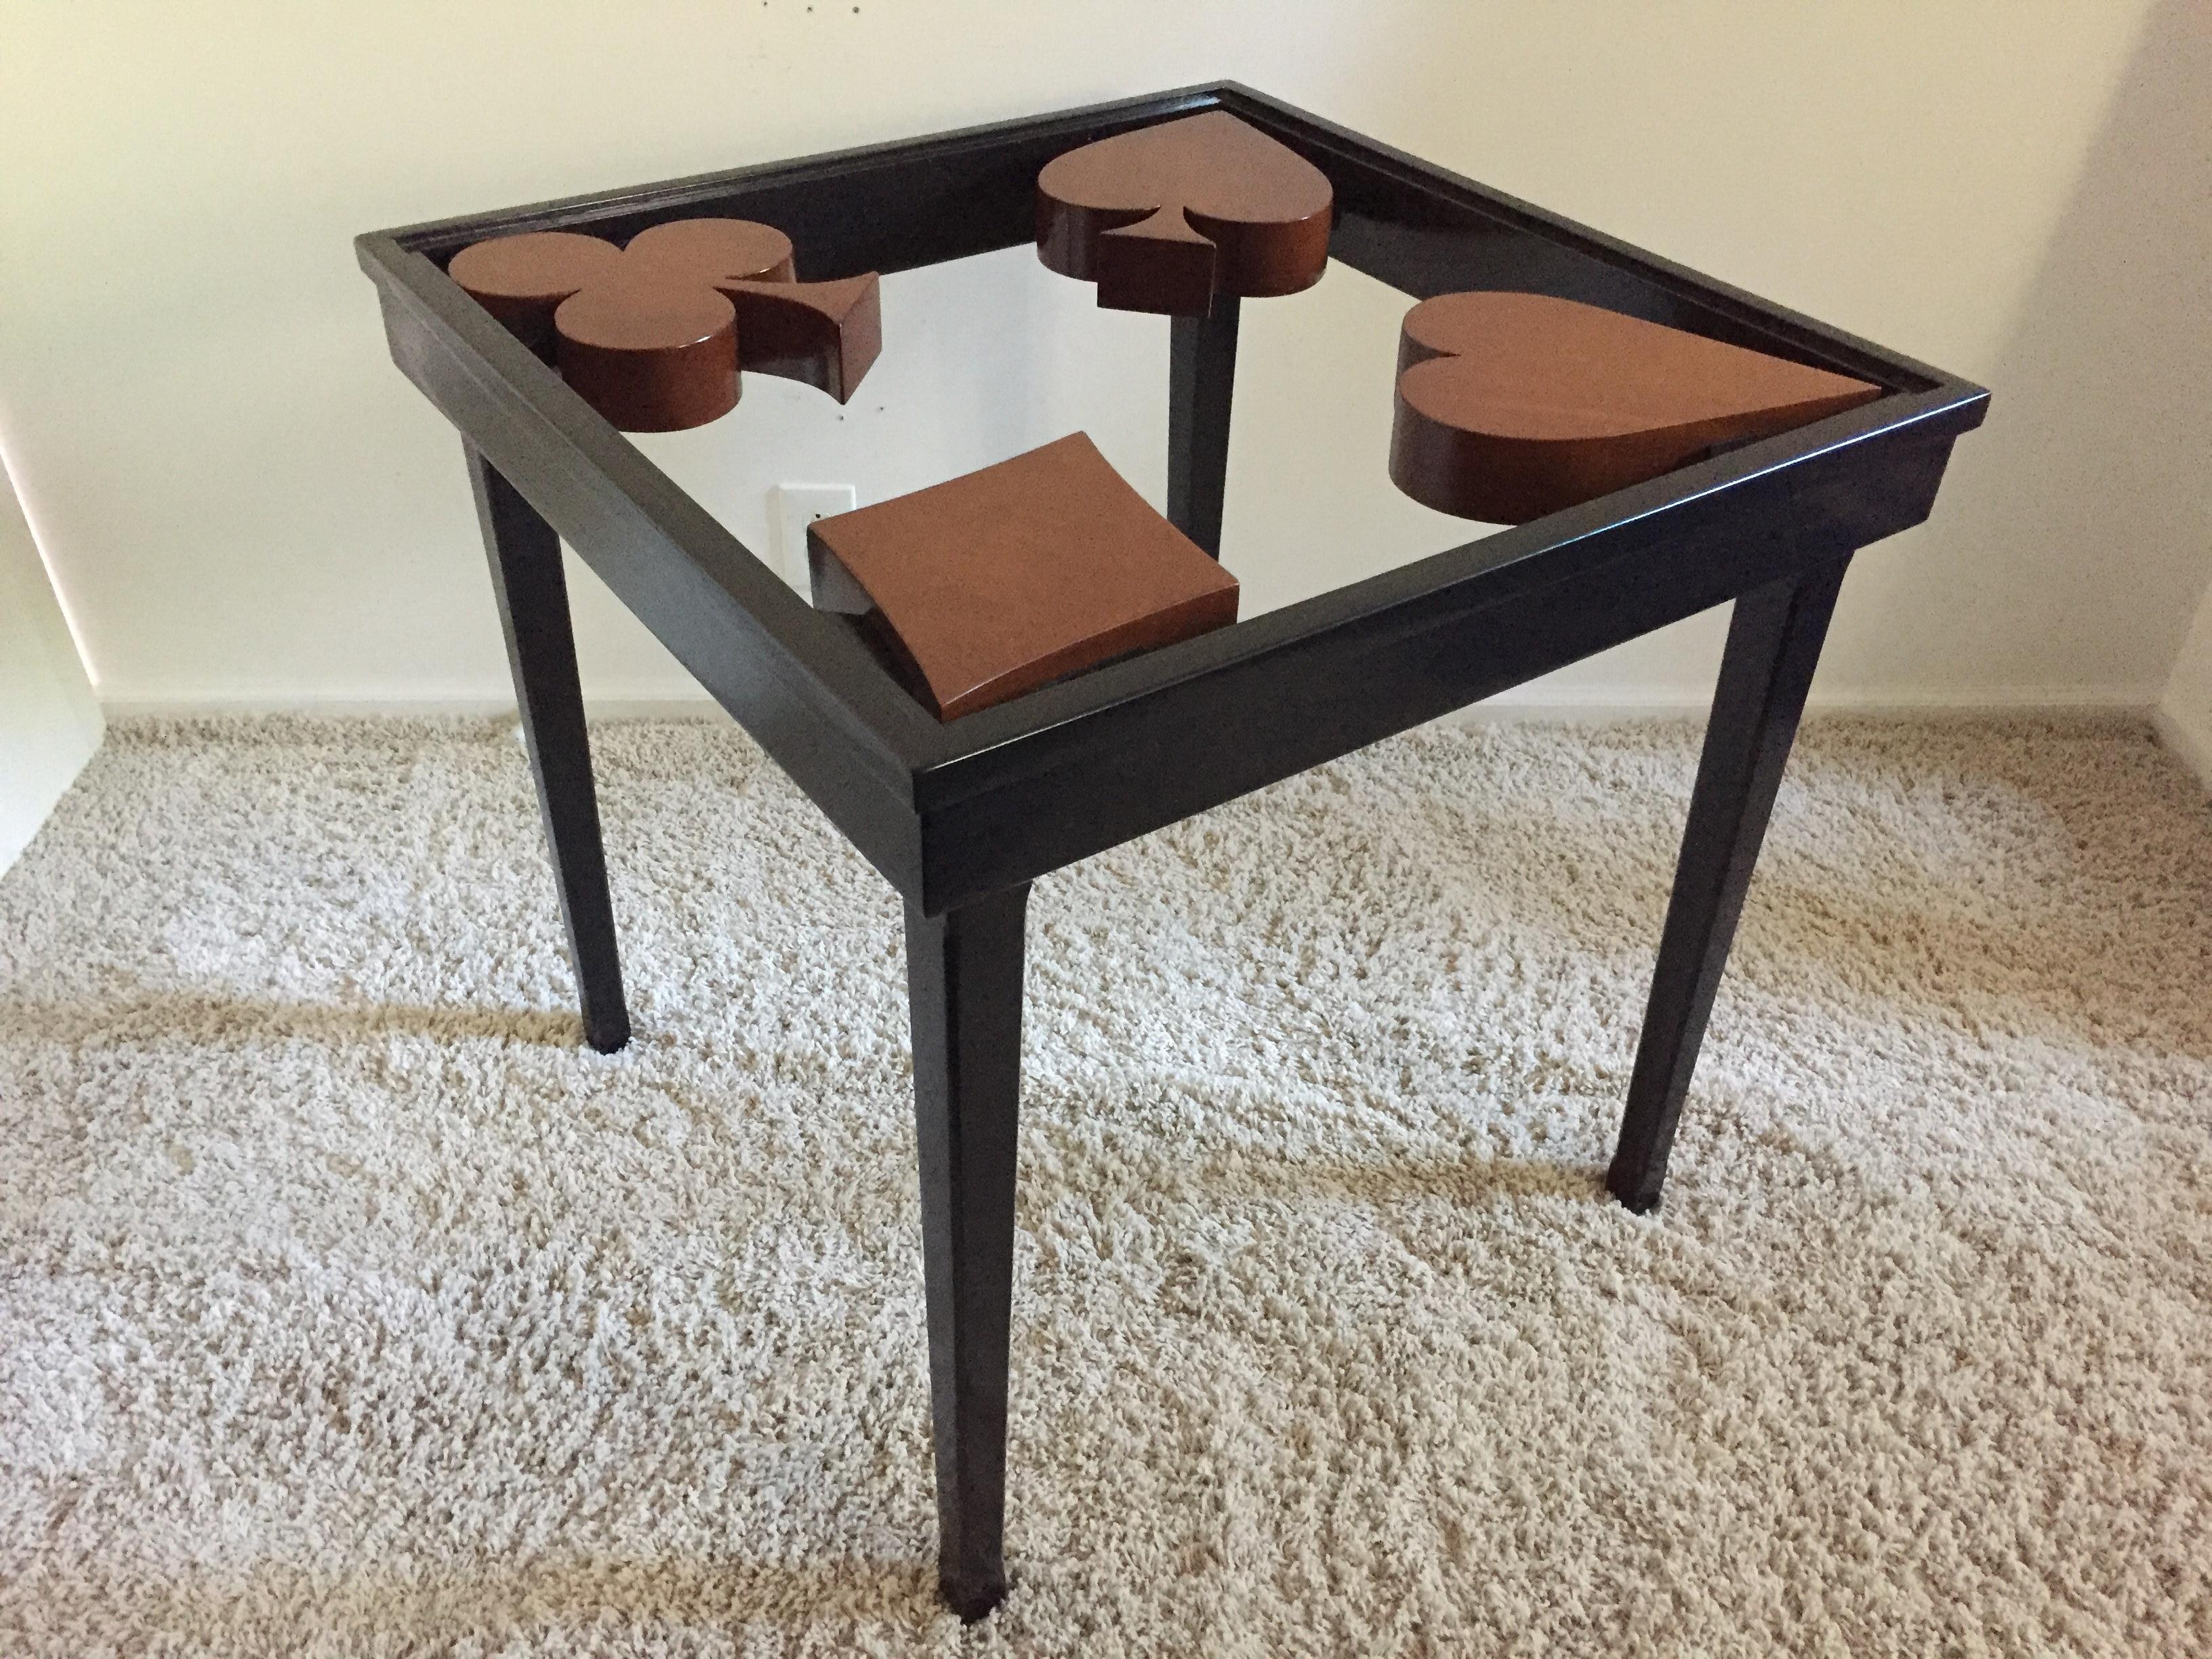 Kartentisch oder Spieltisch handgefertigt Mid-Century Modern Design mit Herz-Keule-Pik-Raute große Mahagoni-Platte, Glaseinsatz, gibt es zwei zur Verfügung mit einem leichten Bein Unterschied.